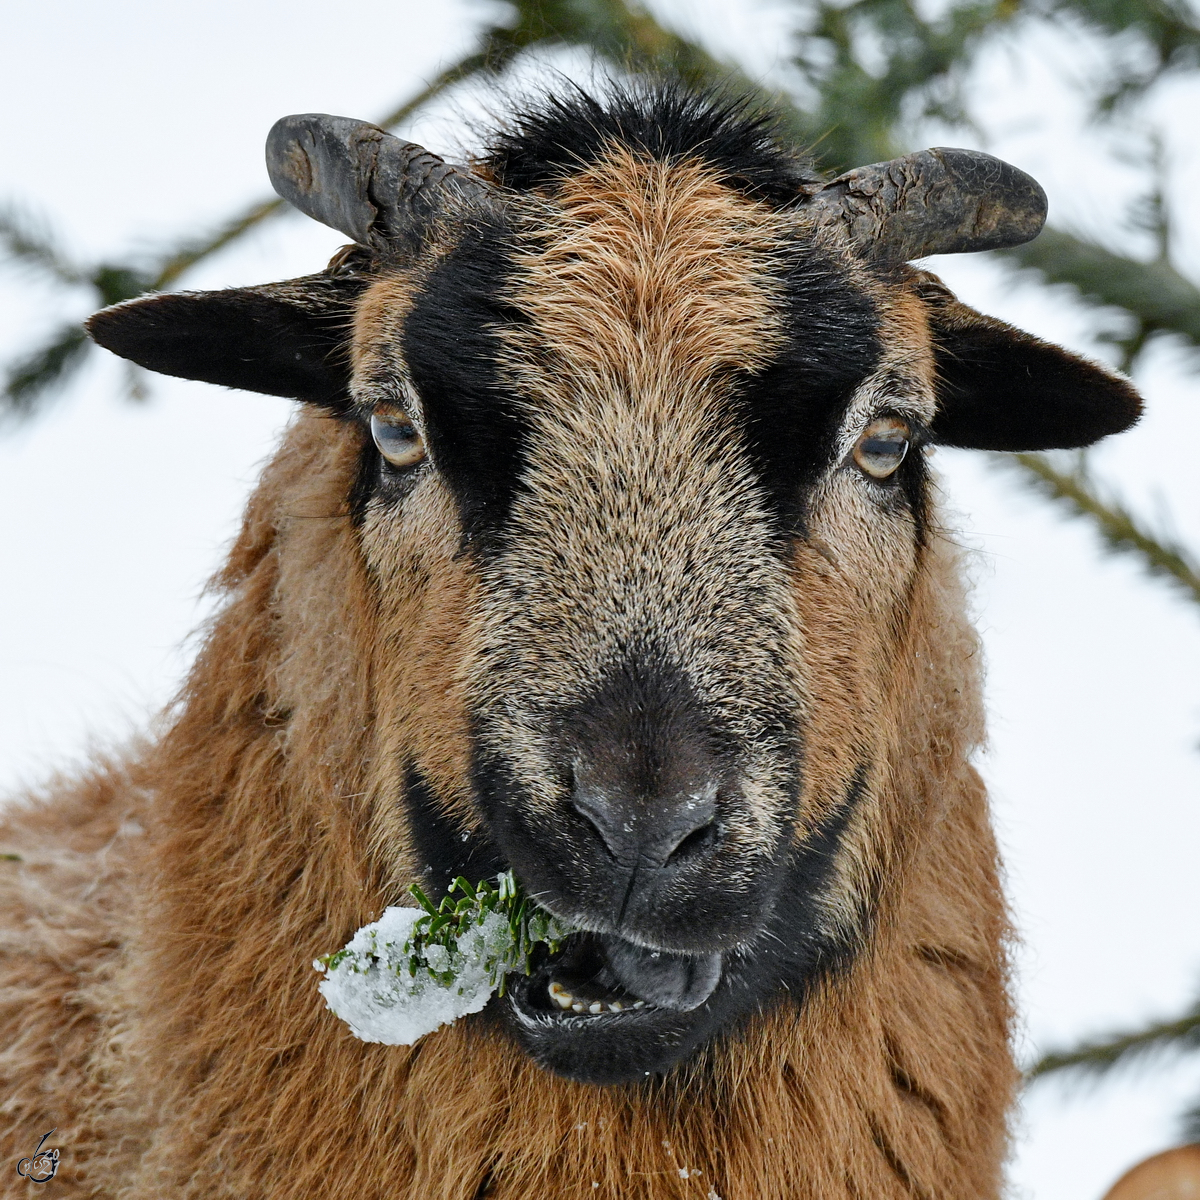 Lecker Tannengestrüpp für dieses Schaf. (Hattingen, Februar 2021)